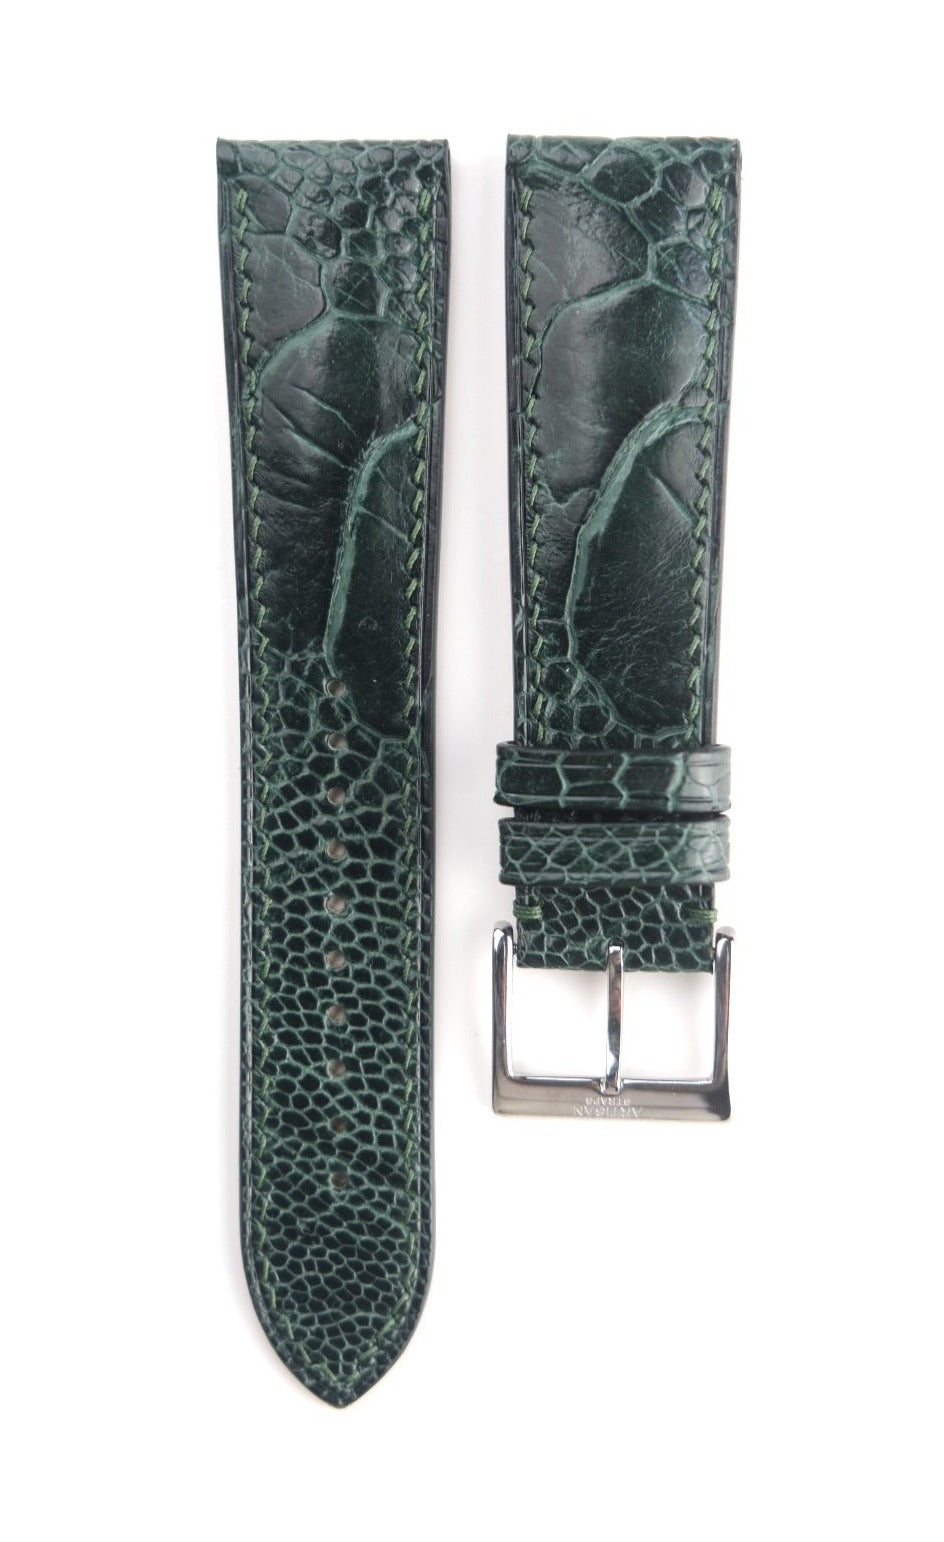 Ostrich Leg Leather Strap in Dark Green - Artisan Straps